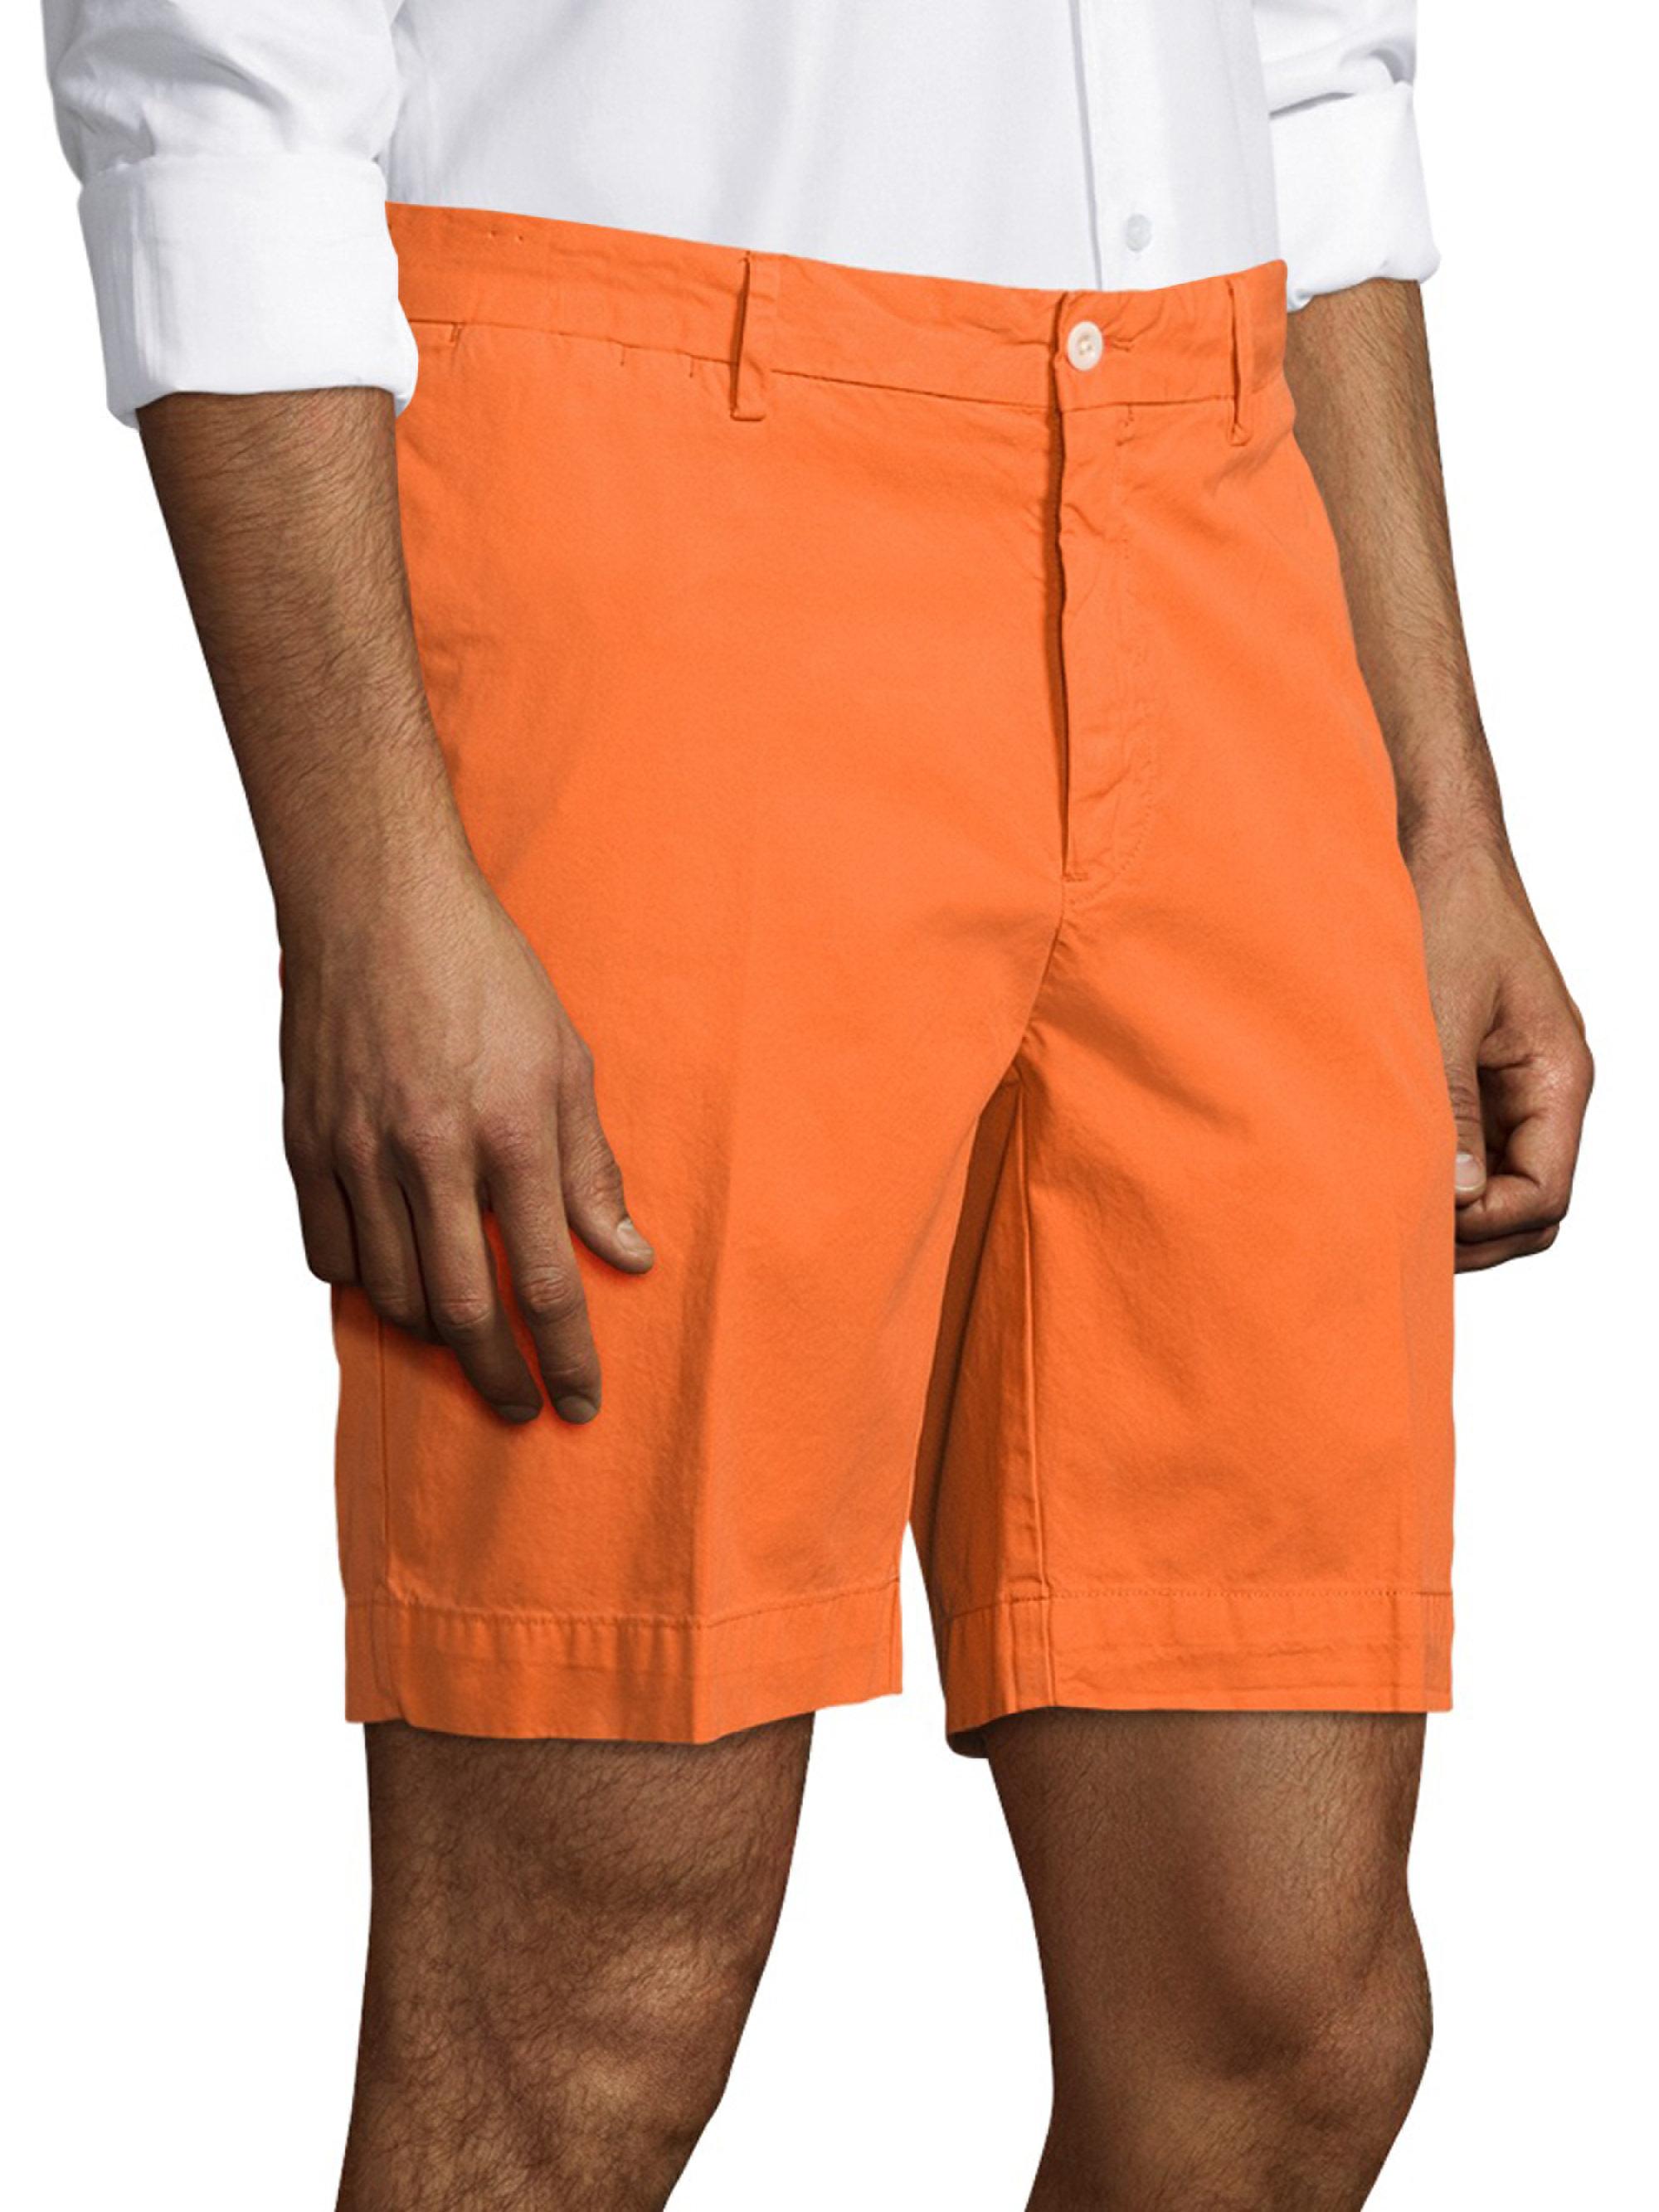 Lyst - Polo Ralph Lauren Newport Shorts in Orange for Men